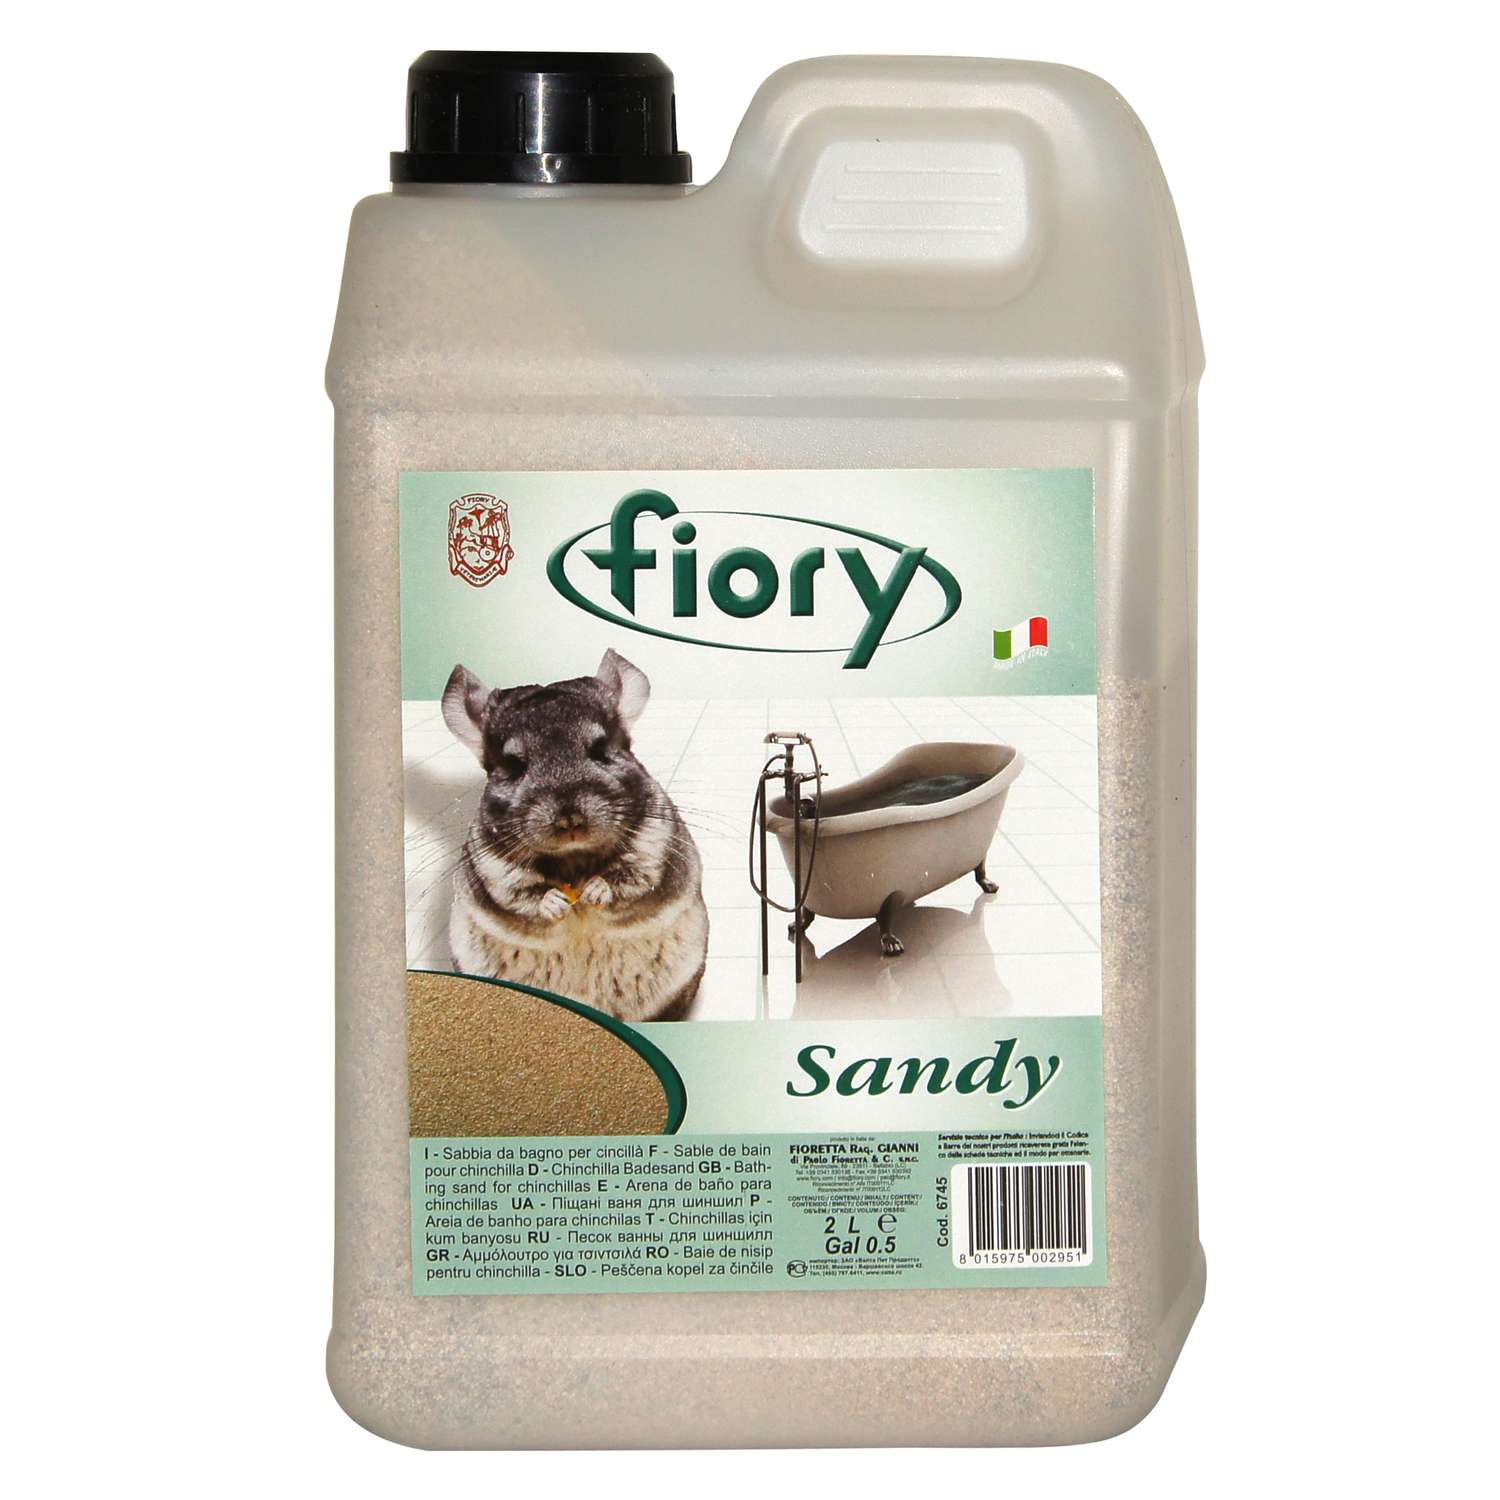 Песок для шиншилл Fiory Sandy 1.3кг - фото 1